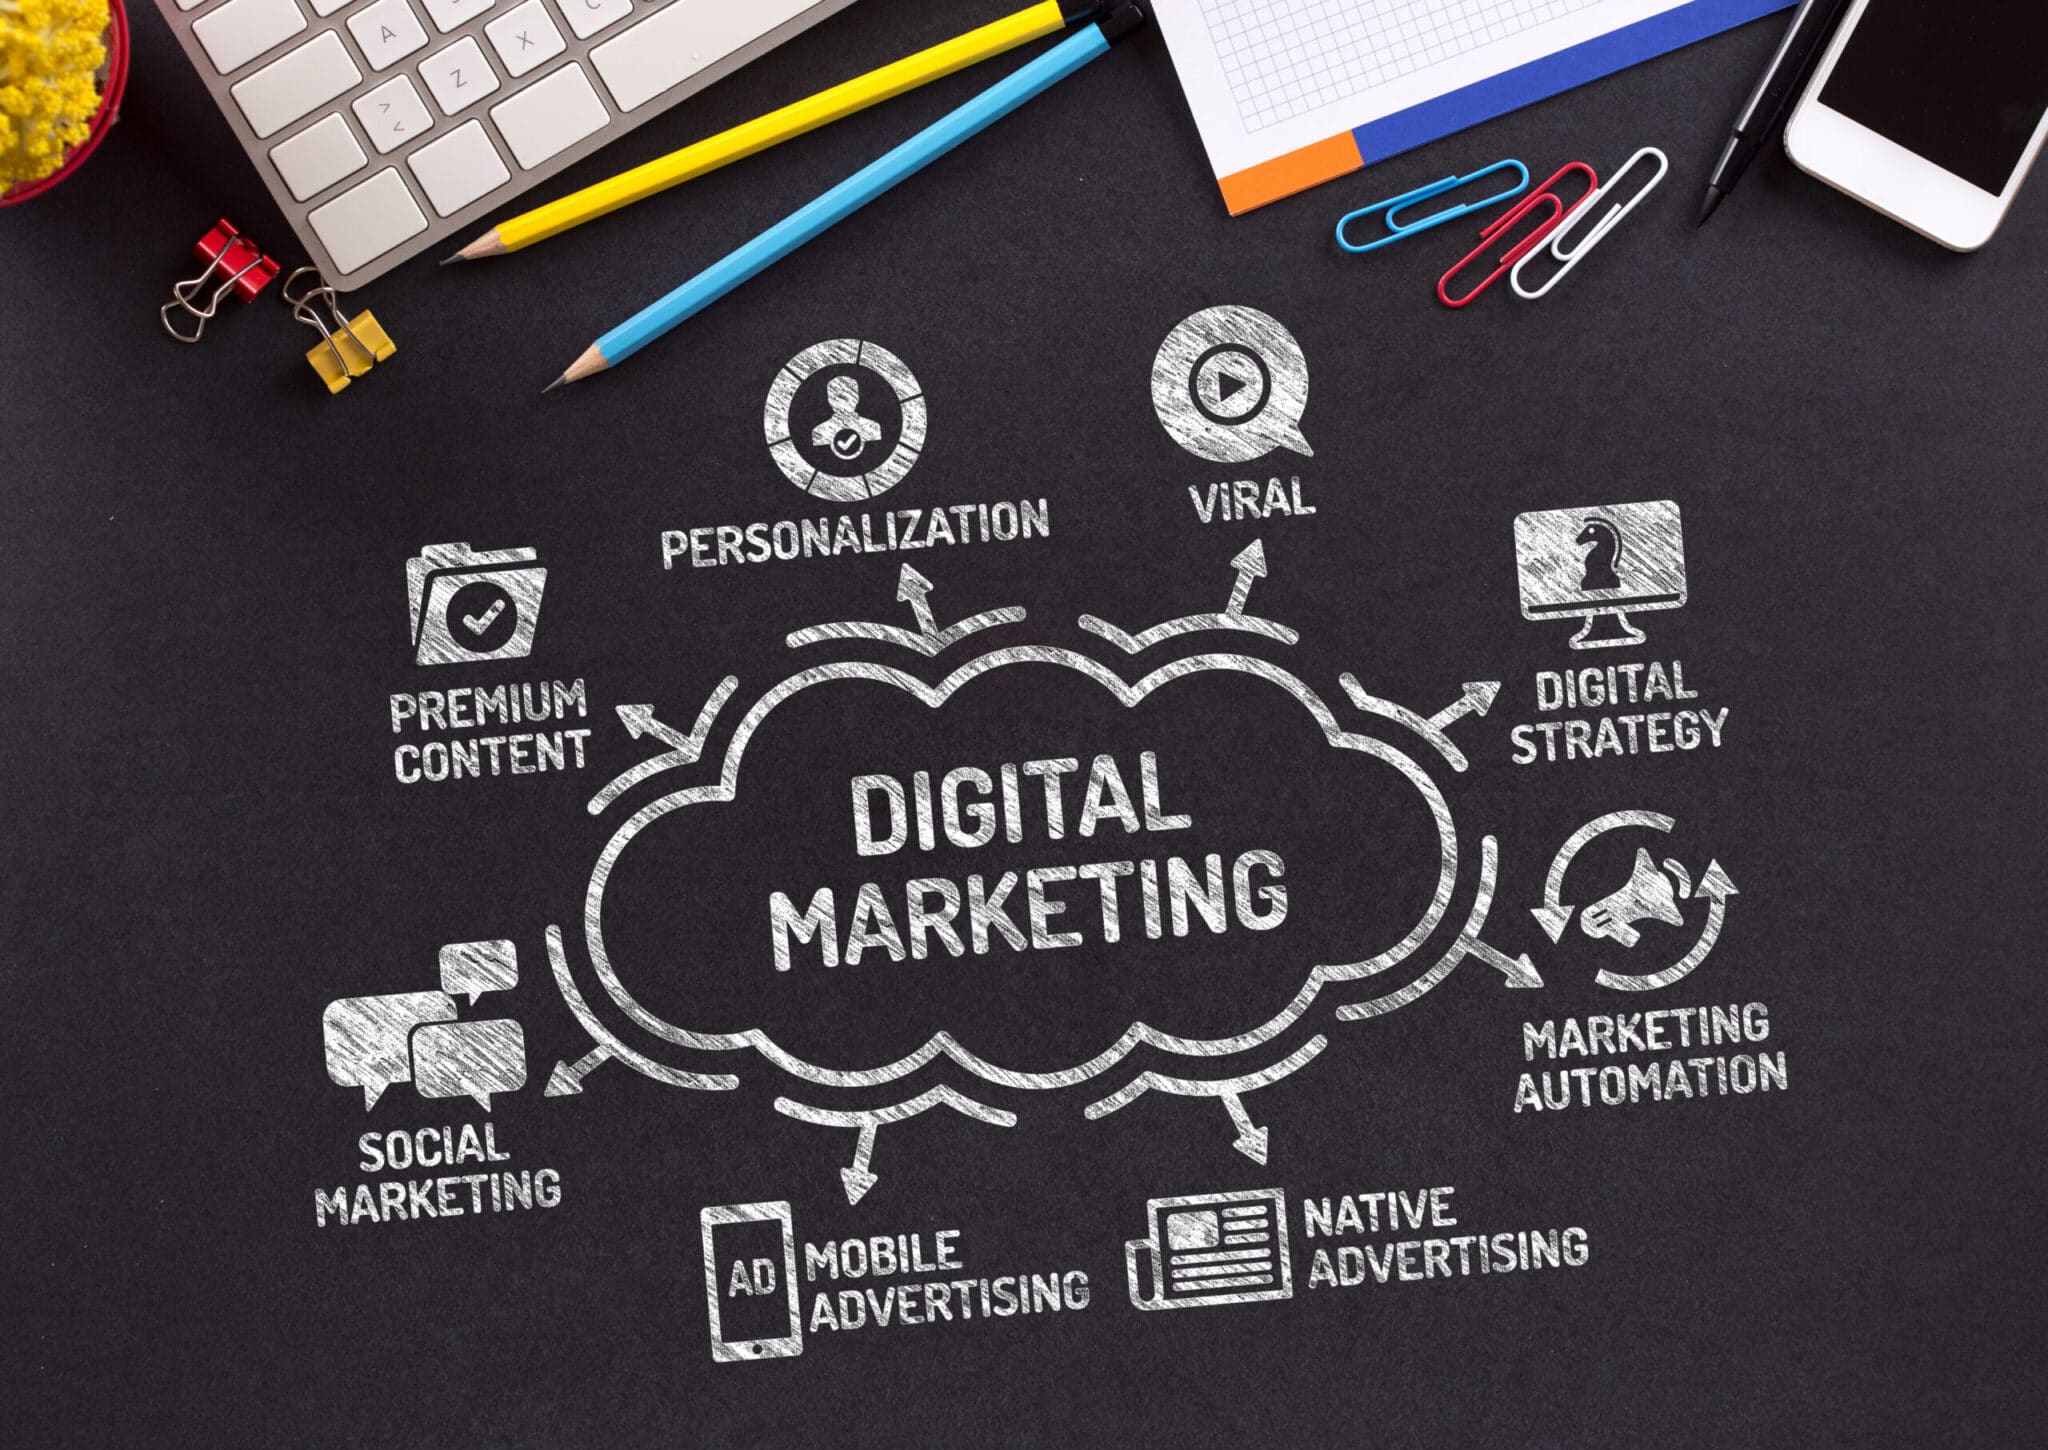 Digital Marketing Tips - Types of Digital Marketing